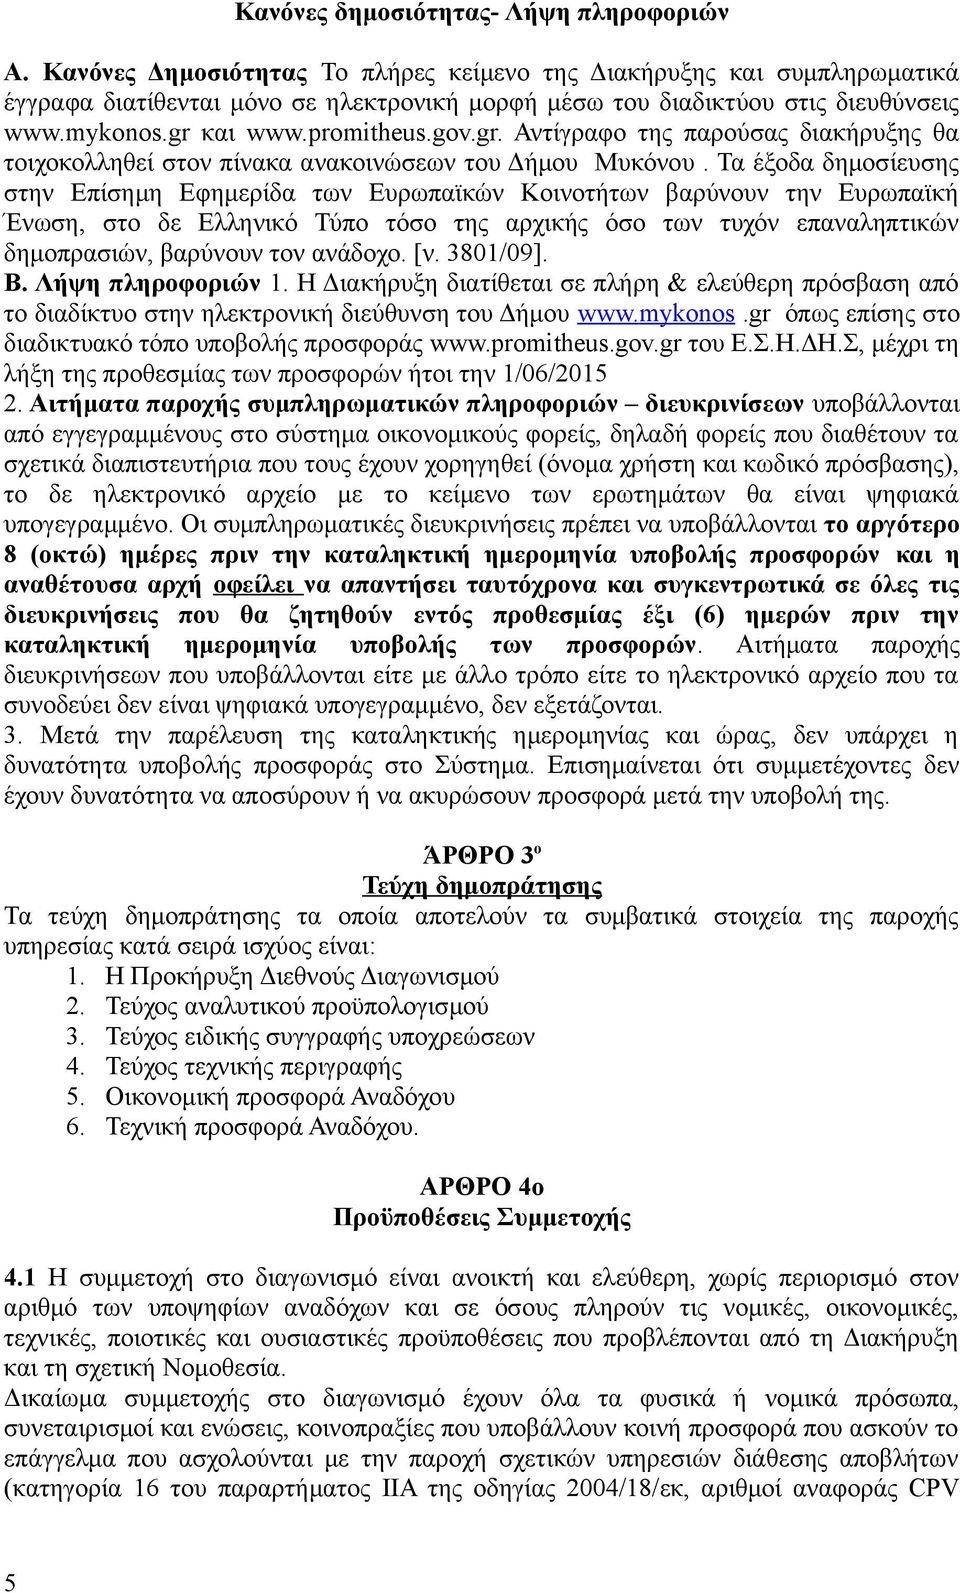 και www.promitheus.gov.gr. Αντίγραφο της παρούσας διακήρυξης θα τοιχοκολληθεί στον πίνακα ανακοινώσεων του Δήμου Μυκόνου.